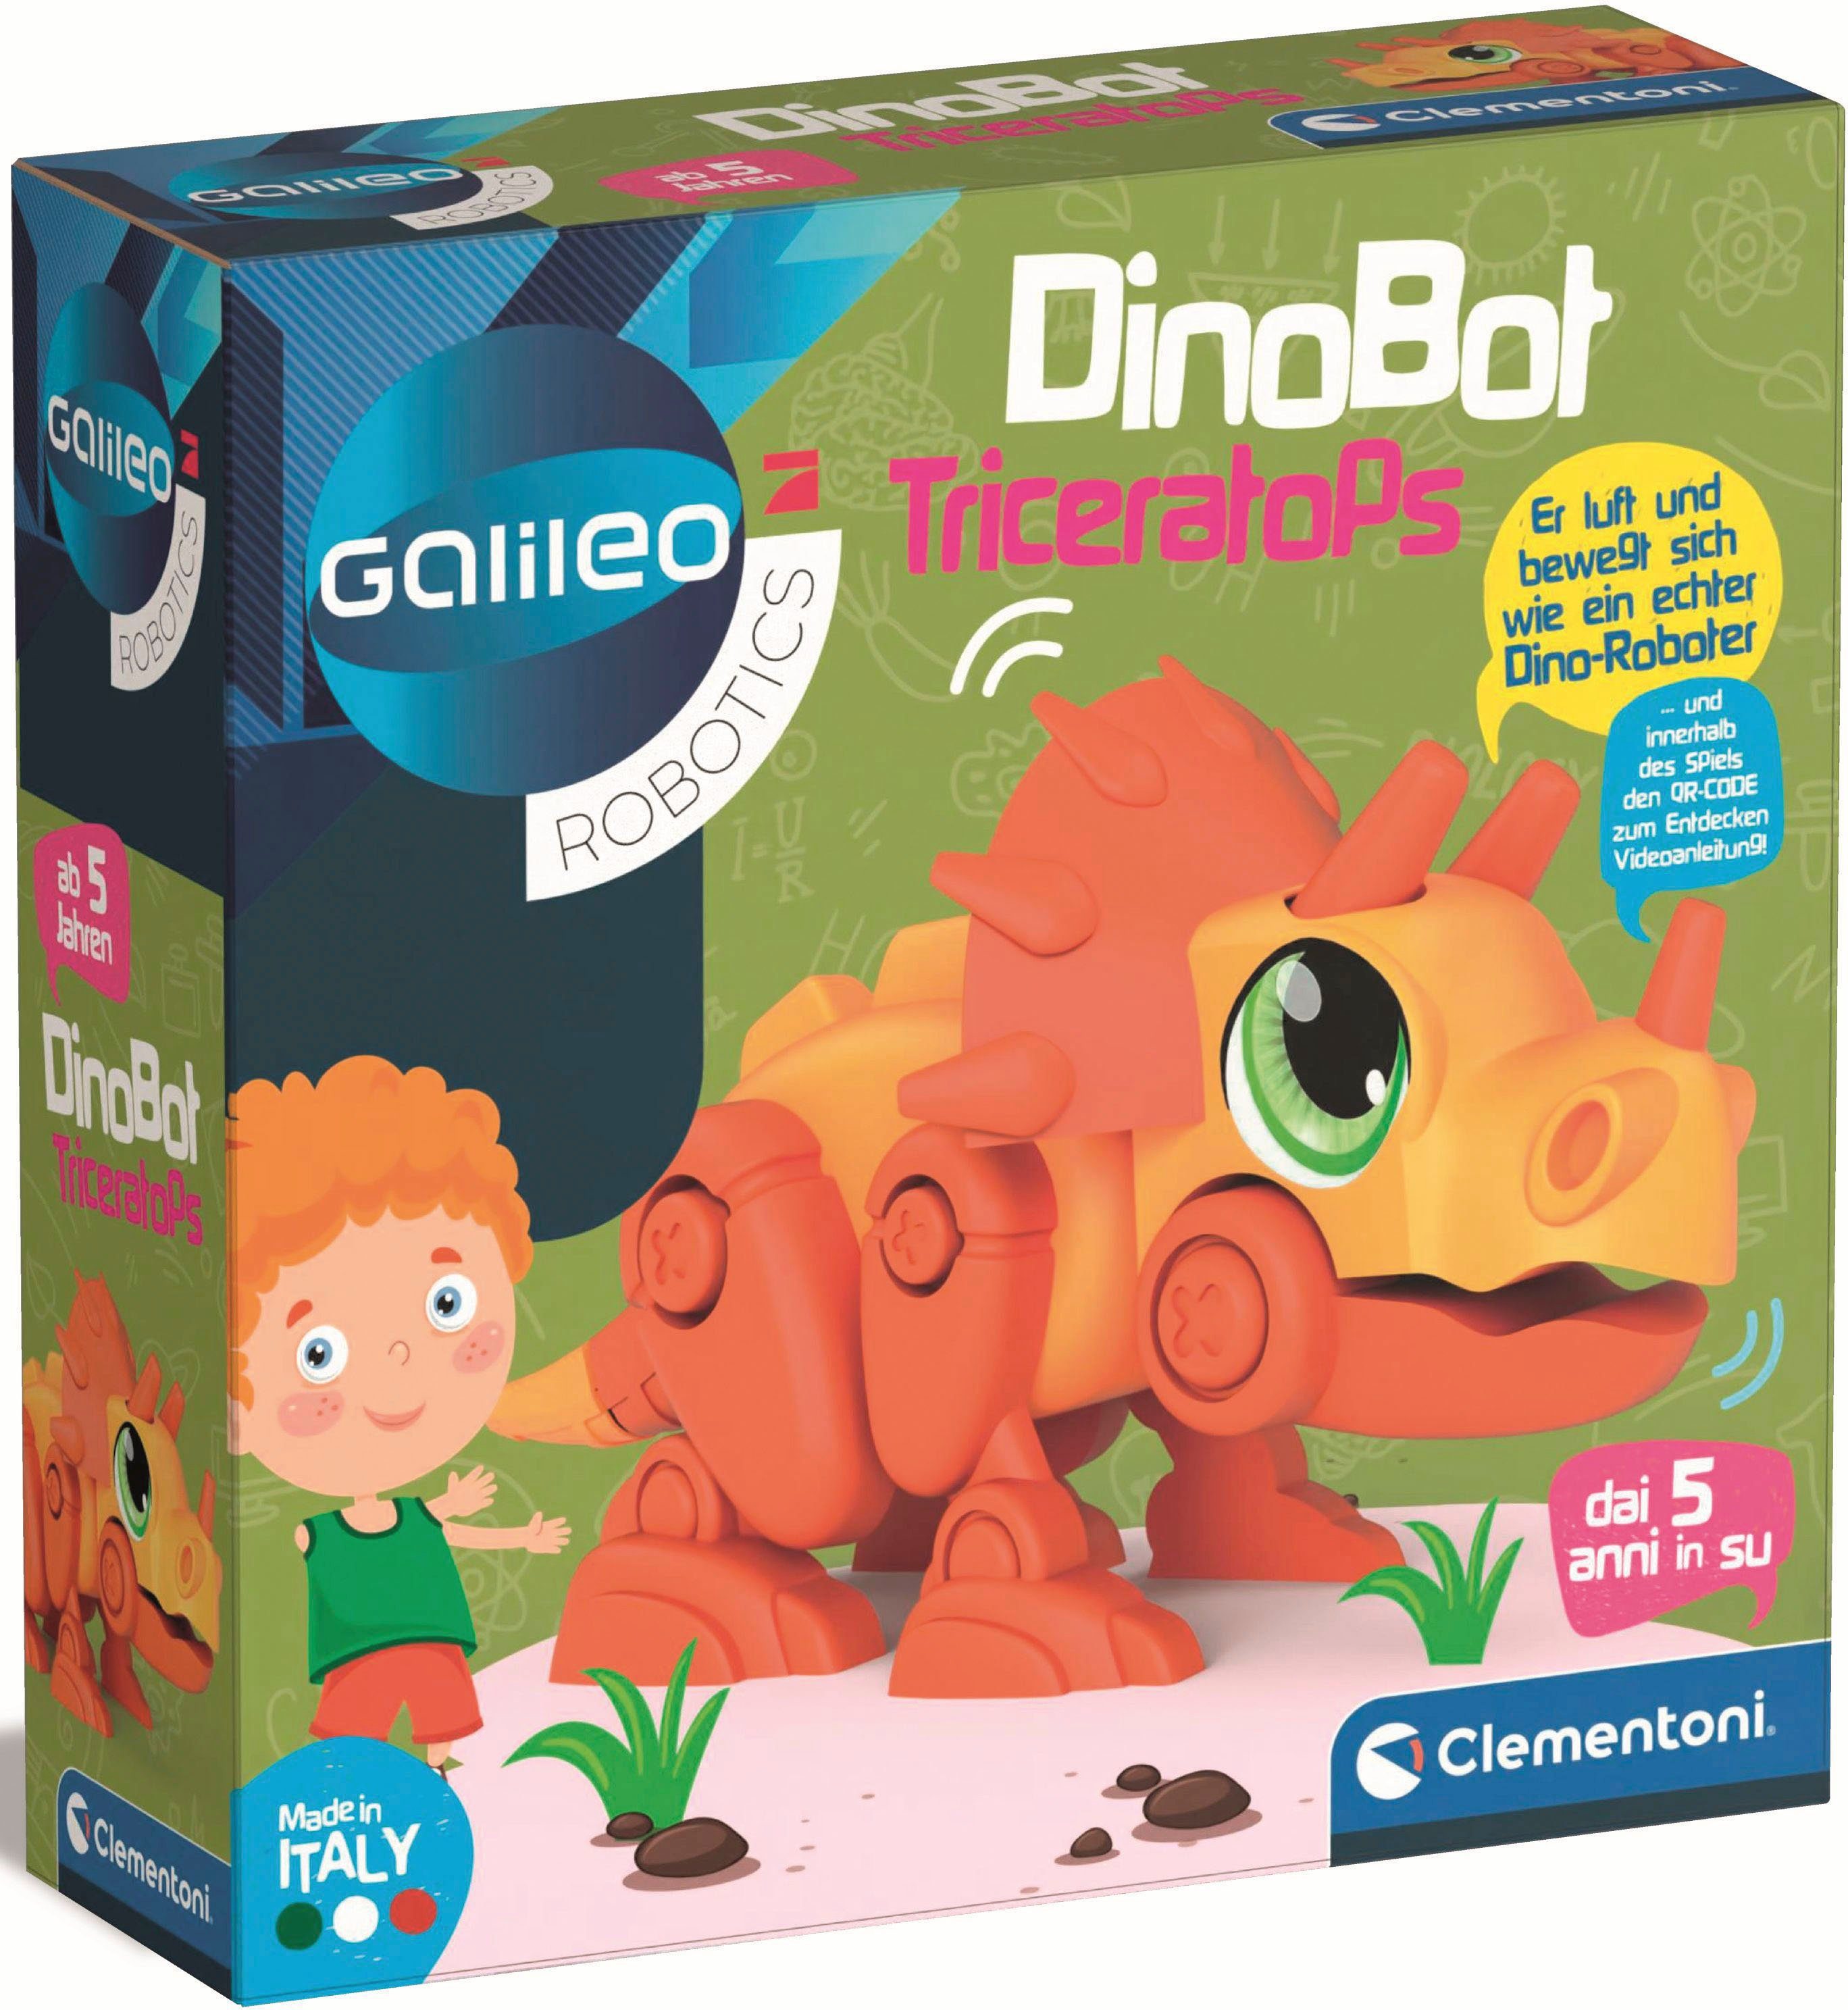 Clementoni® Roboter Made Galileo, DinoBot in Europe Triceratops